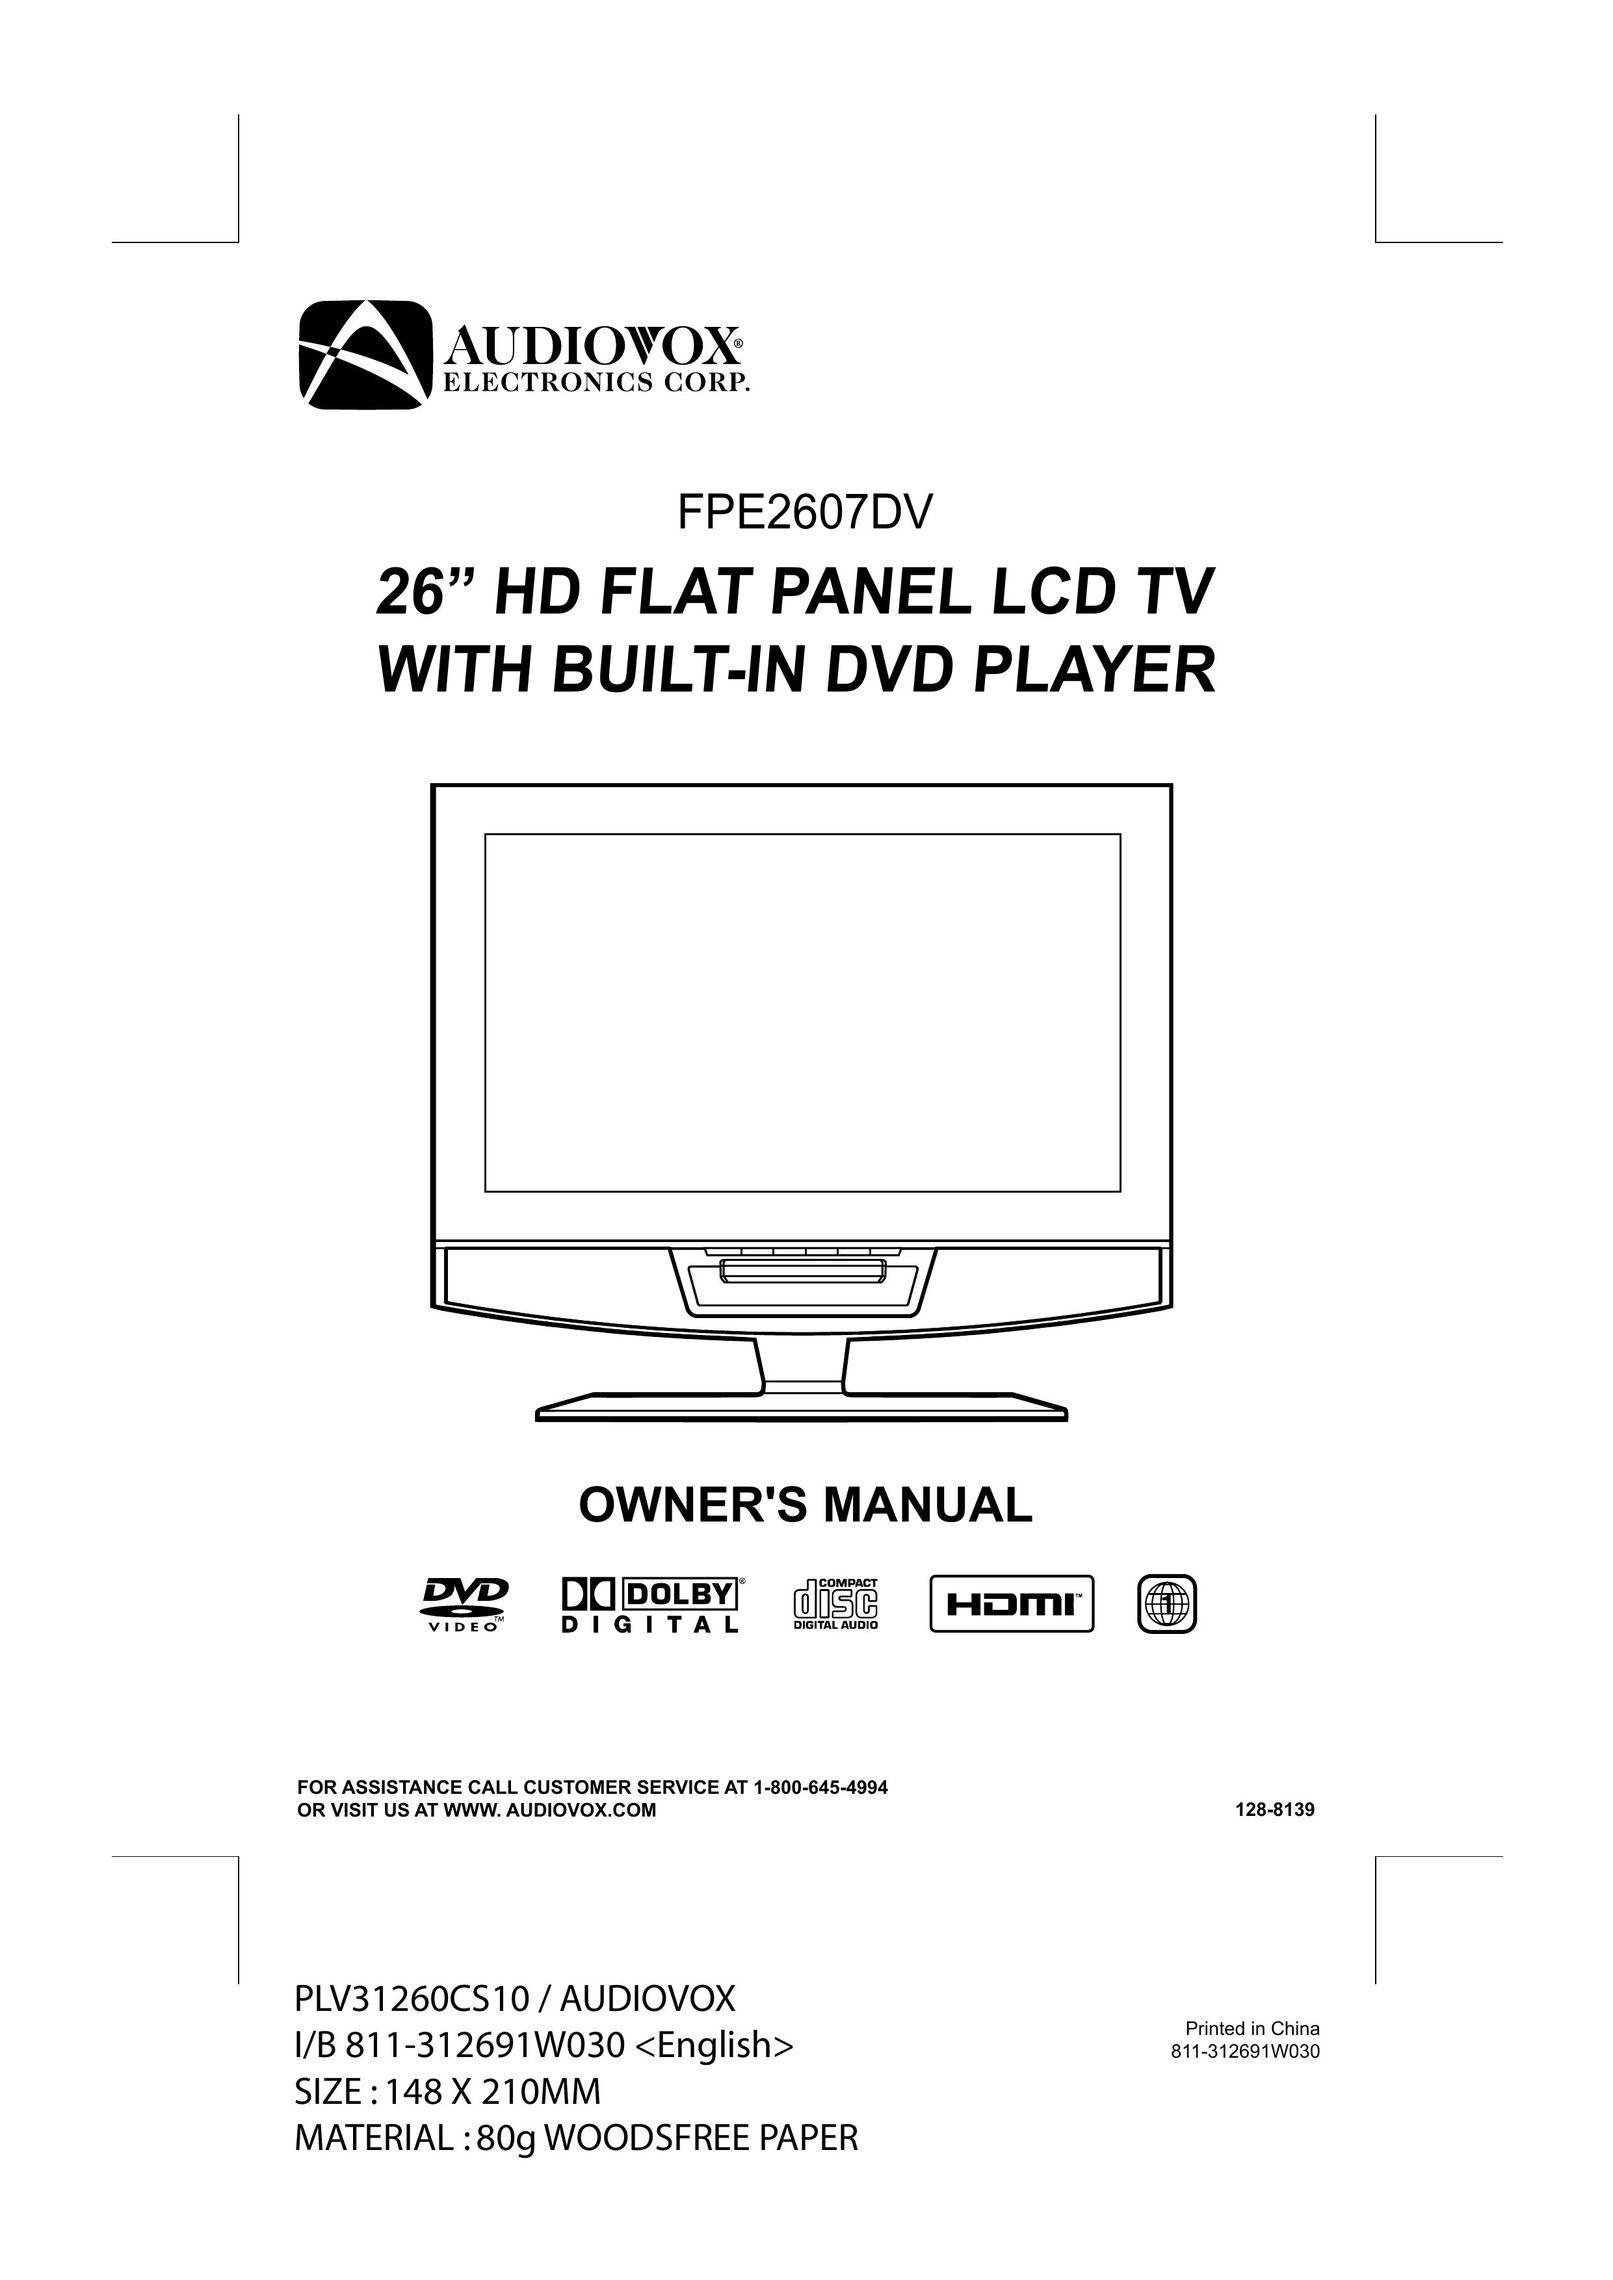 Audiovox FPE2607DV TV DVD Combo User Manual